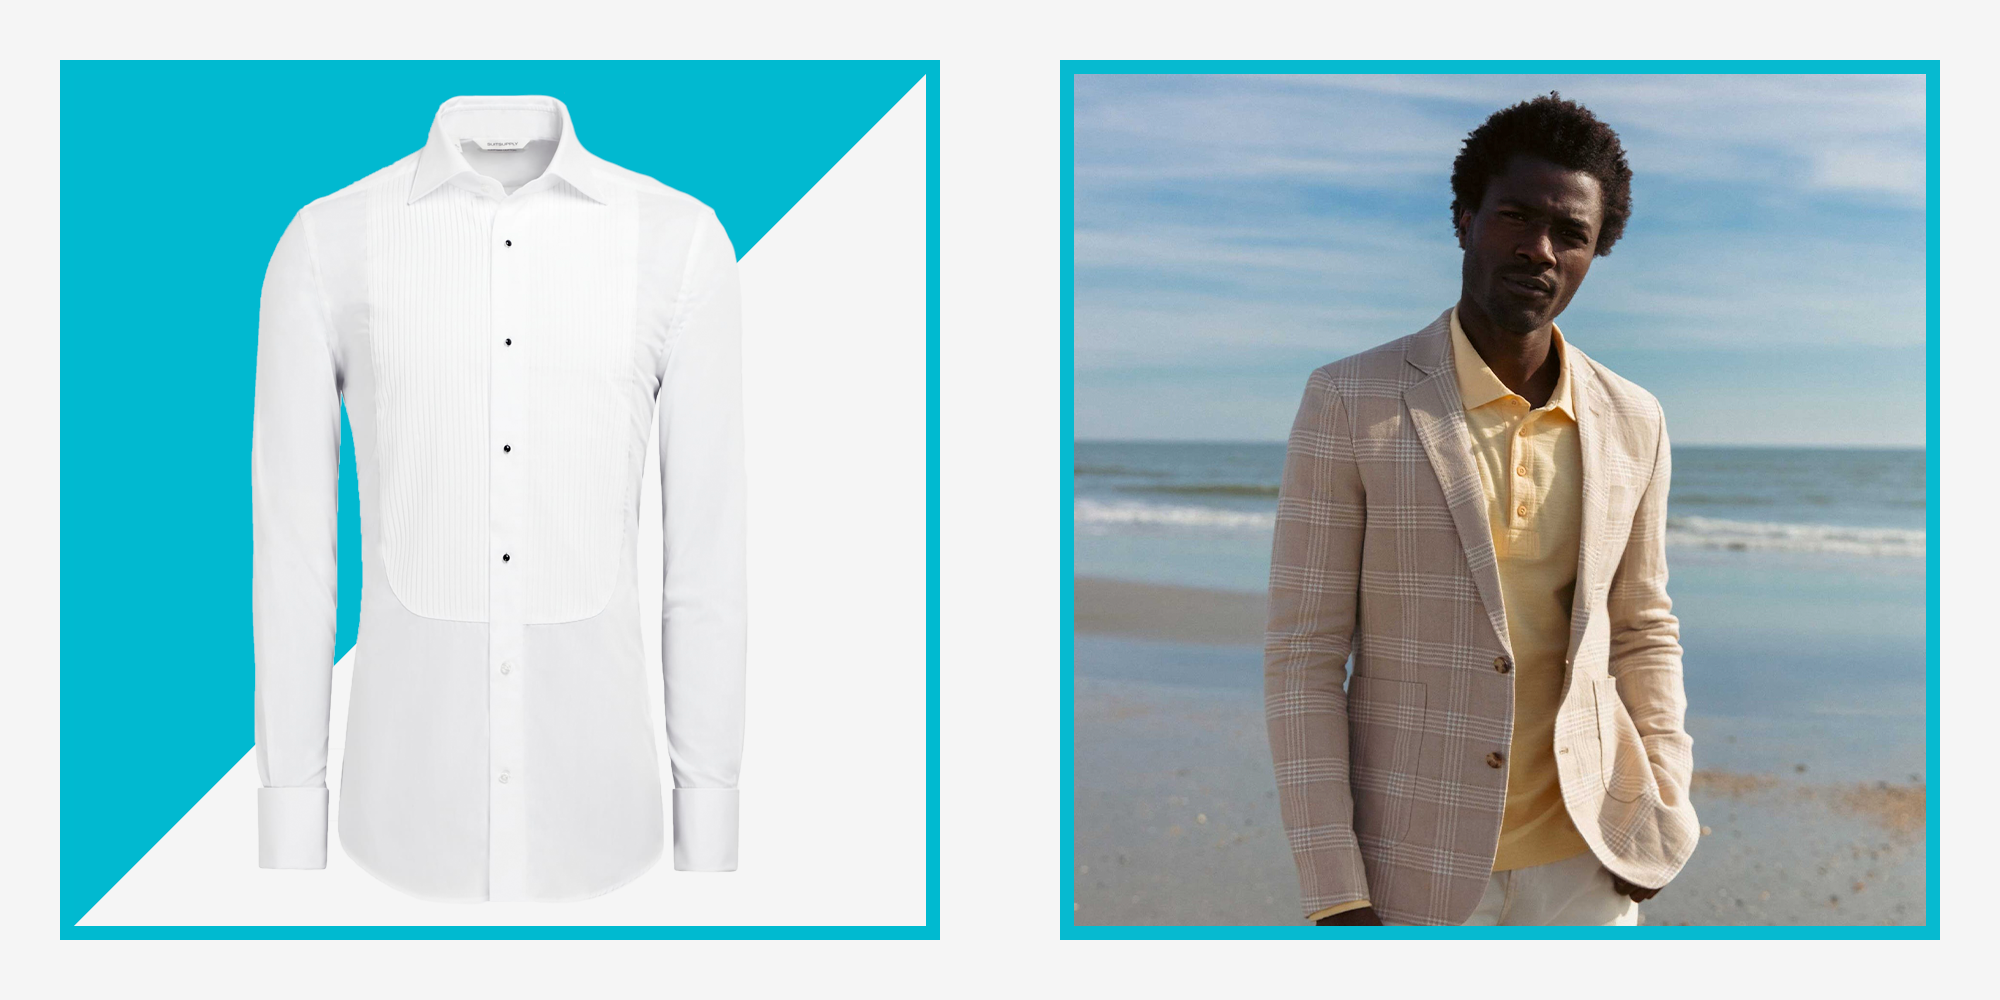 Beach Wedding Attire for Men & Women: Here's What to Wear